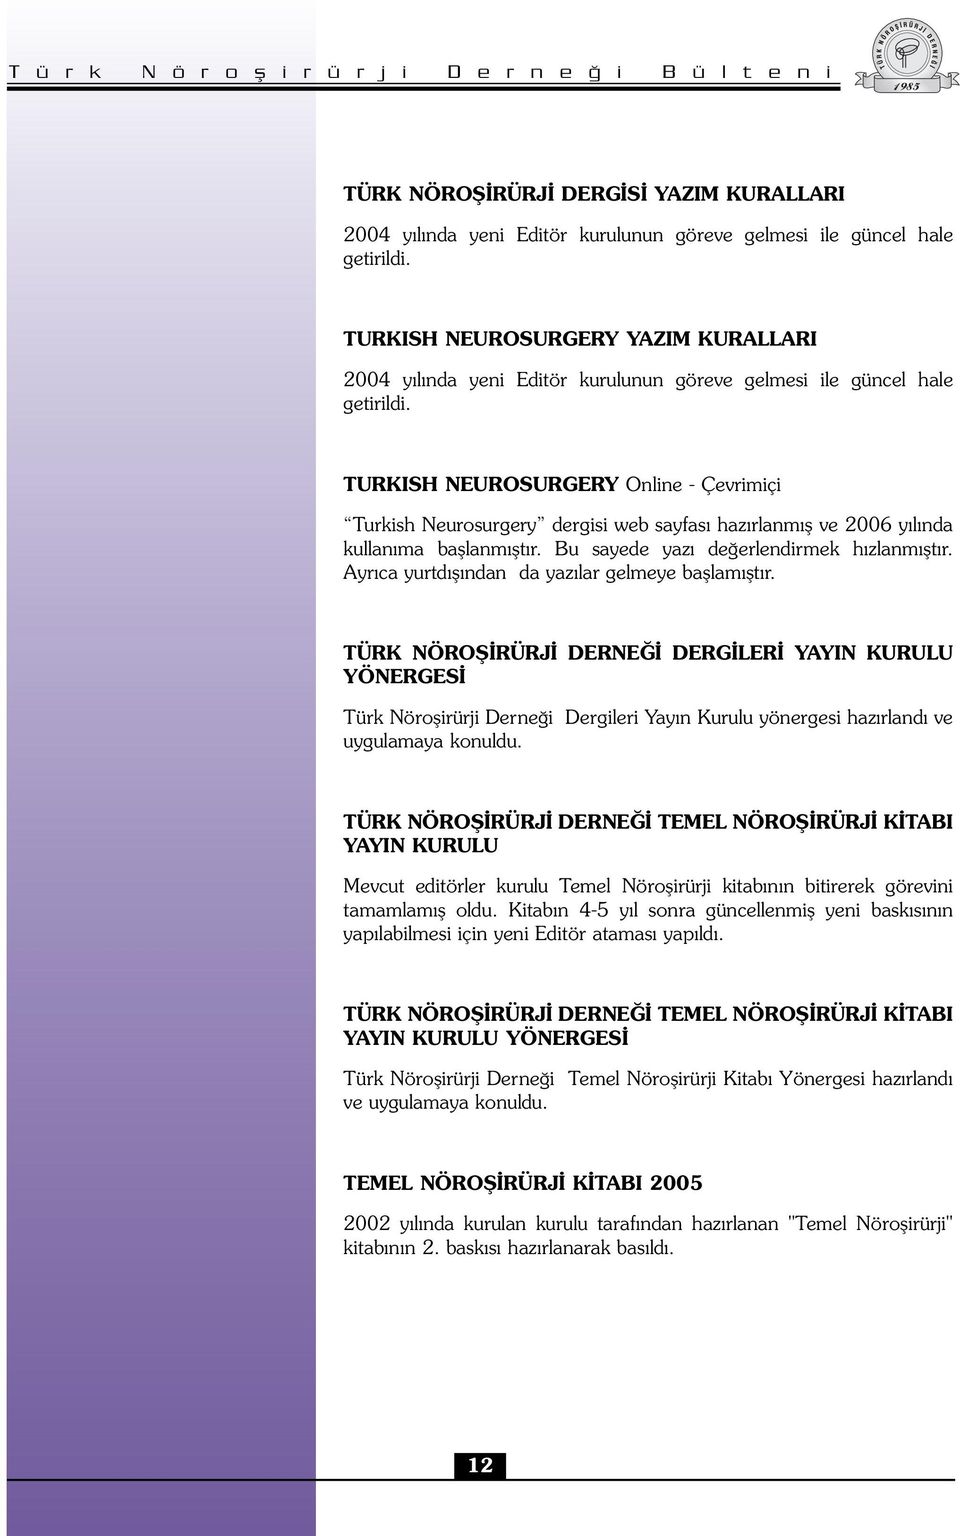 TURKISH NEUROSURGERY Online - Çevrimiçi Turkish Neurosurgery dergisi web sayfası hazırlanmış ve 2006 yılında kullanıma başlanmıştır. Bu sayede yazı değerlendirmek hızlanmıştır.